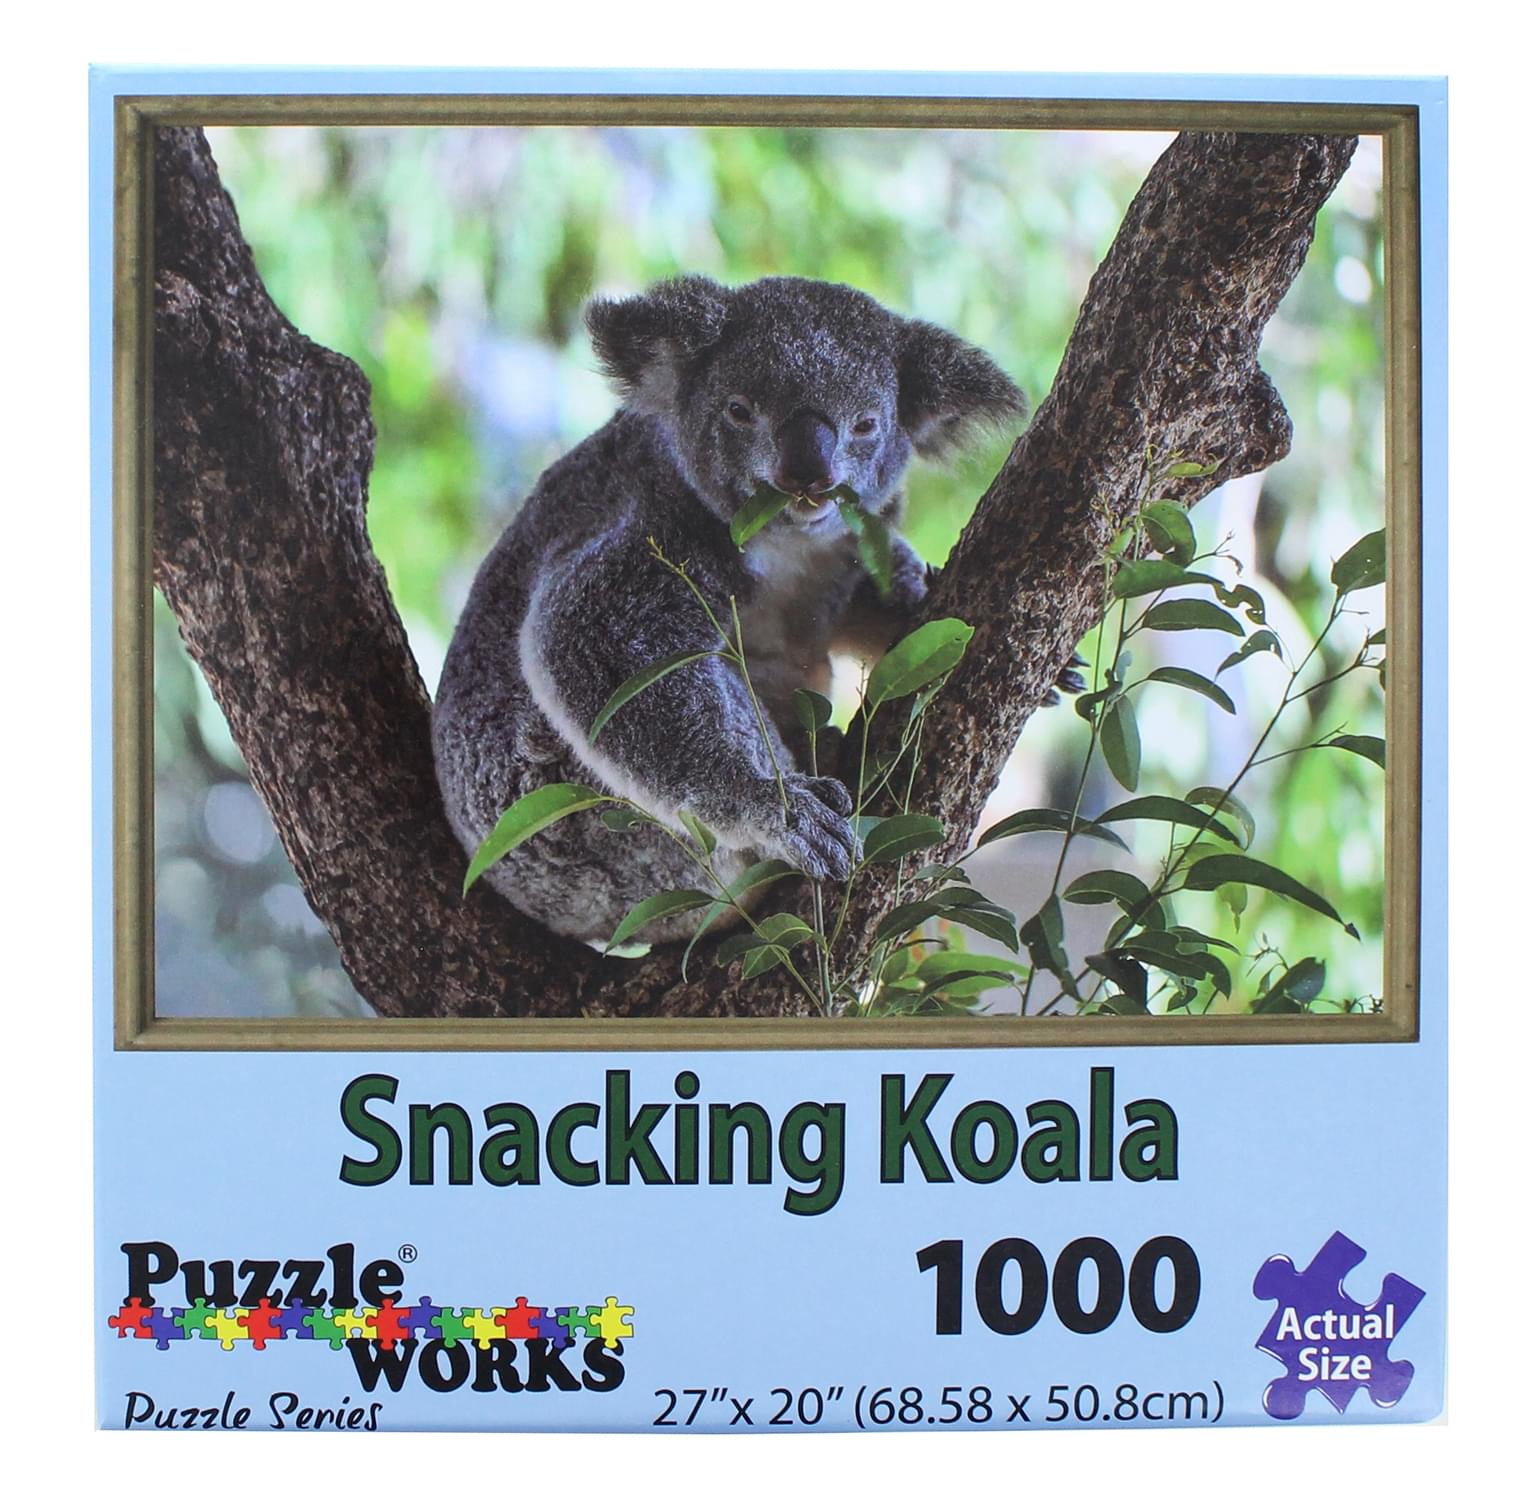 PuzzleWorks 1000 Piece Jigsaw Puzzle , Snacking Koala